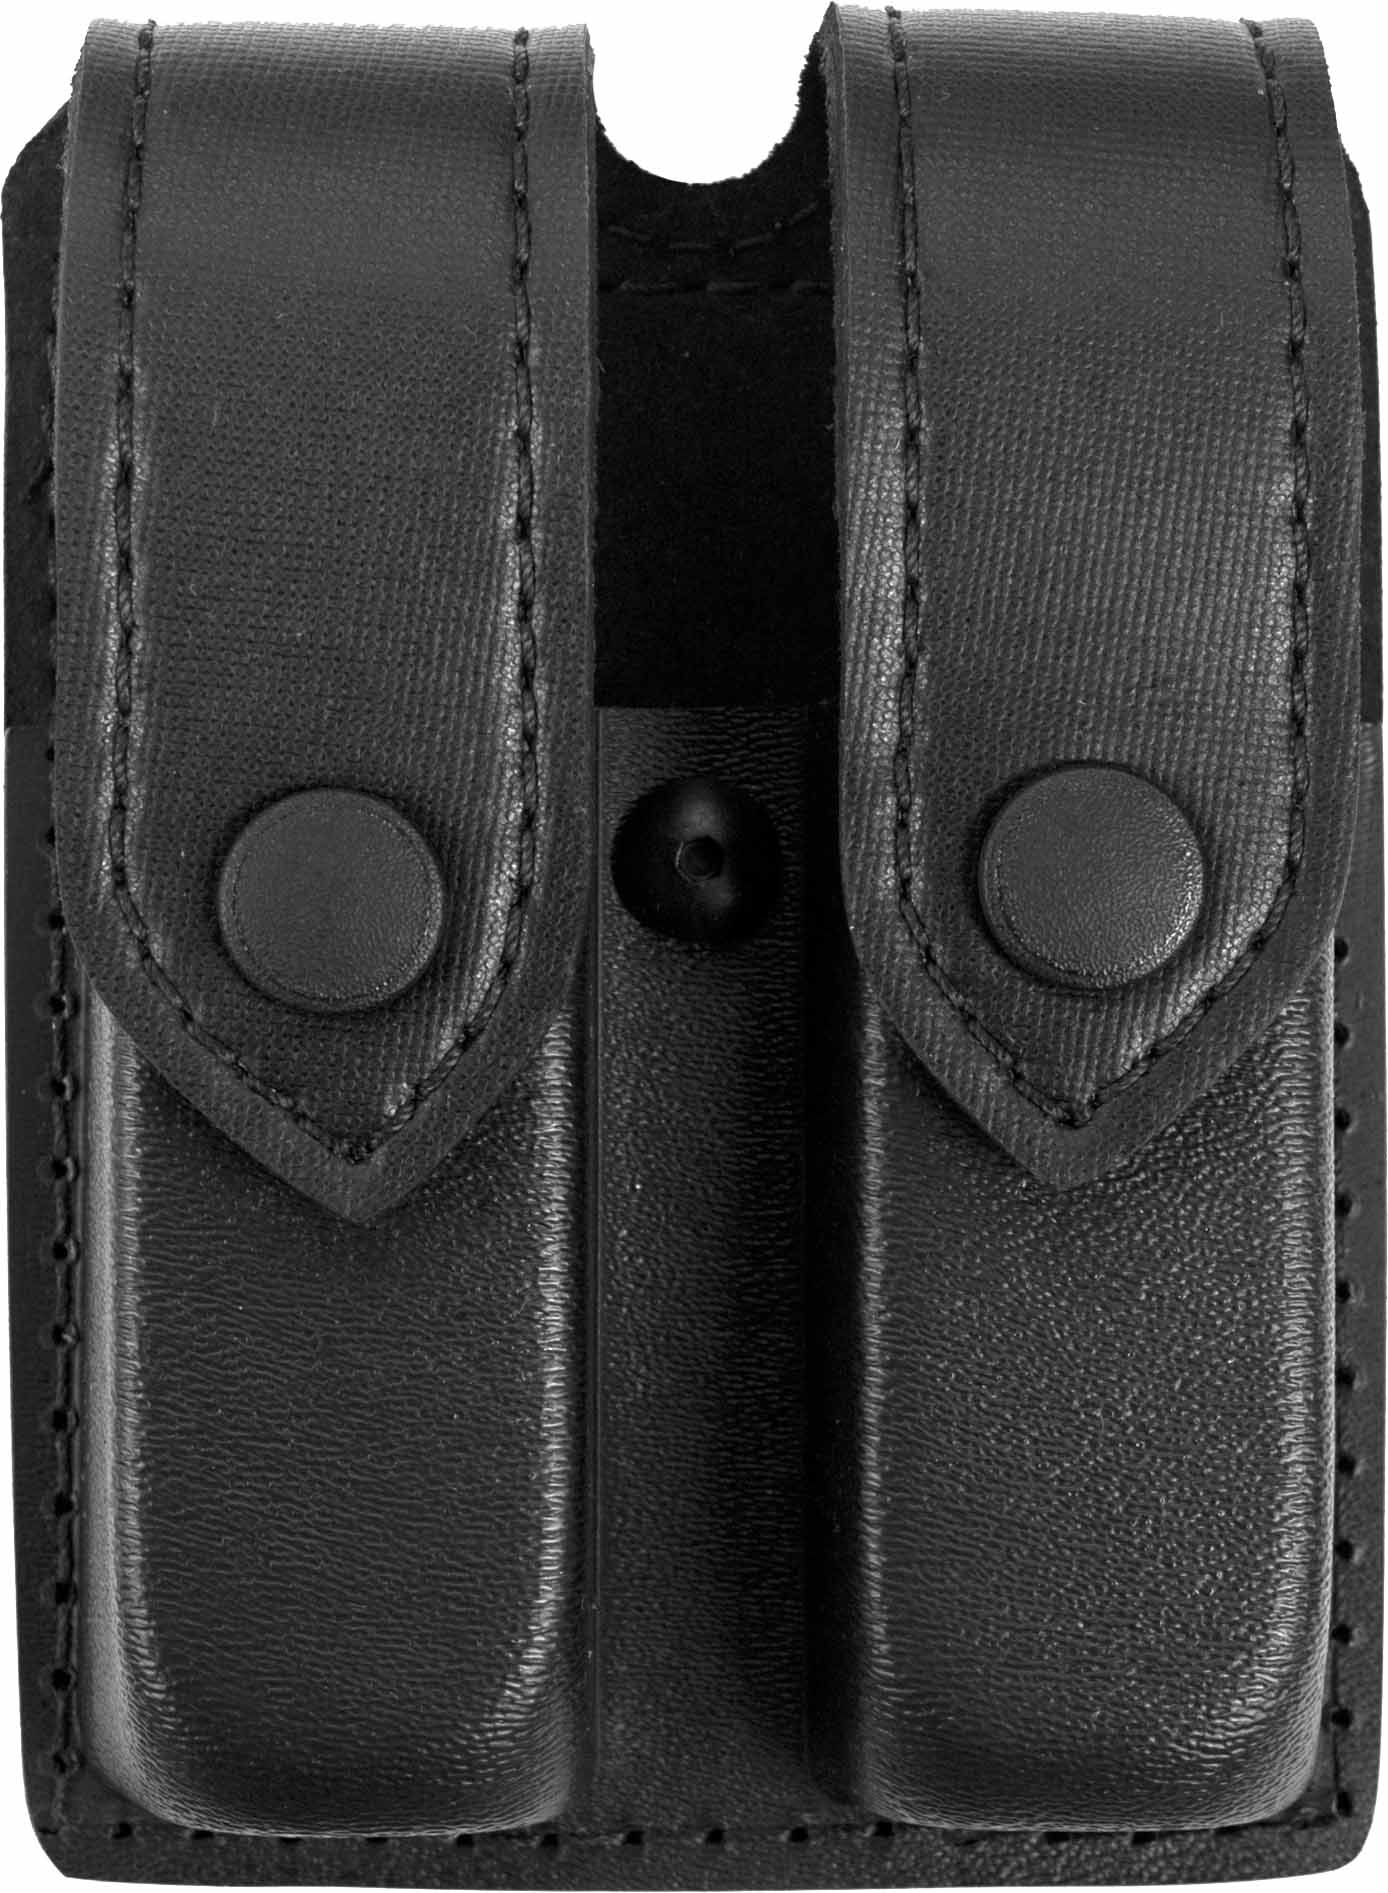 Safariland Double Magazine Pouch Black 77-383-49HS Glock 20,21 H&K USP 9,40,45C 